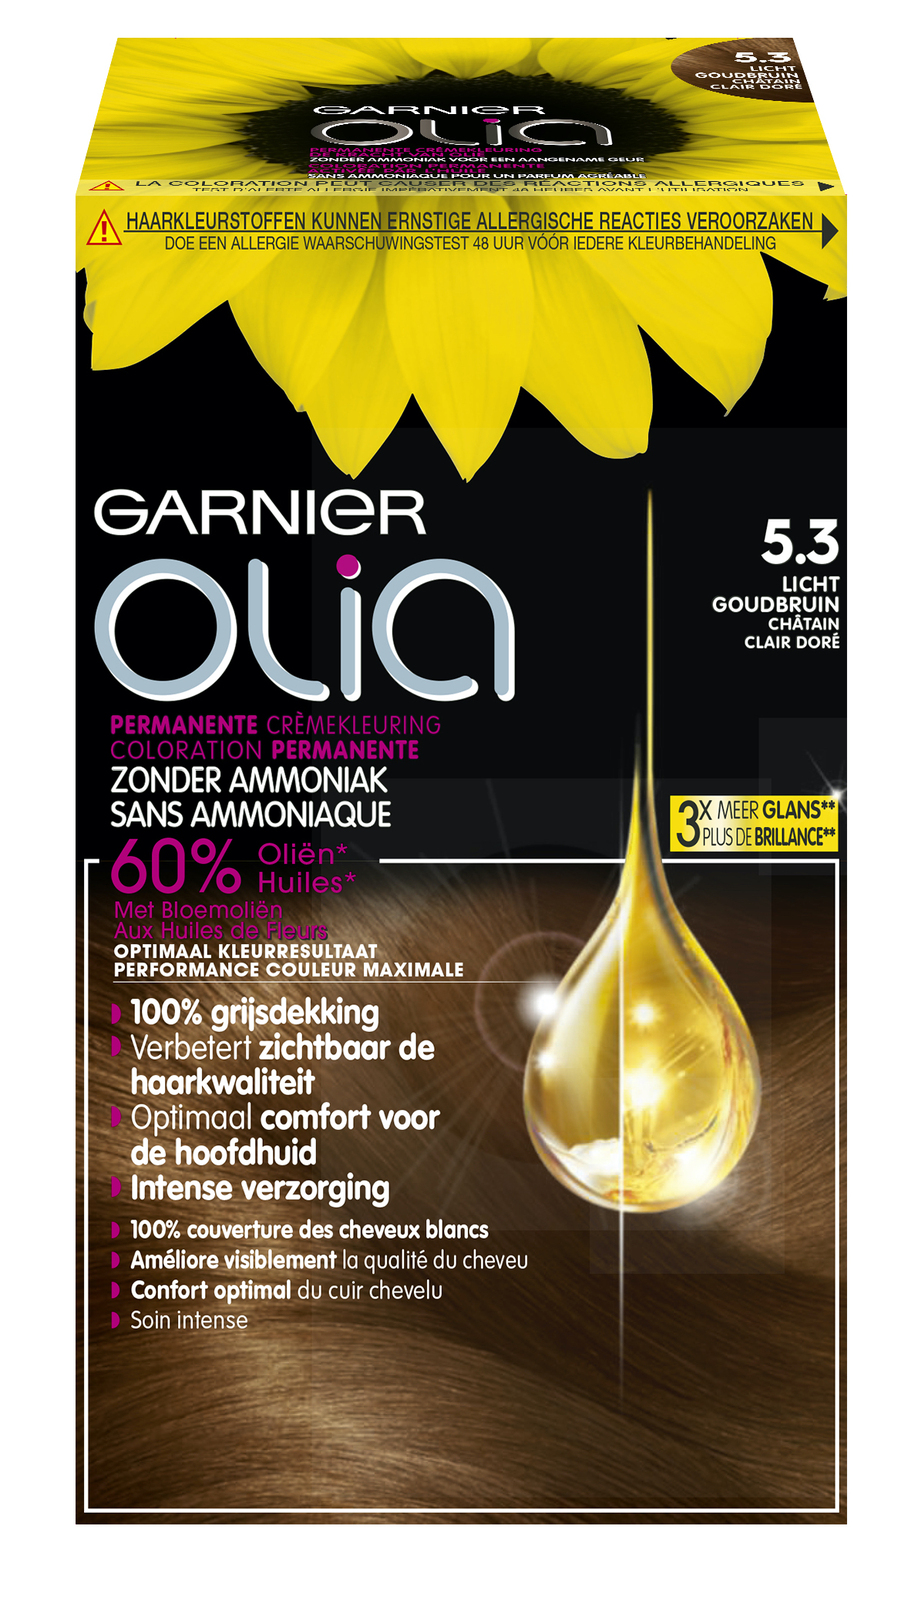 Garnier Olia 5.3 Licht Goudbruin kopen